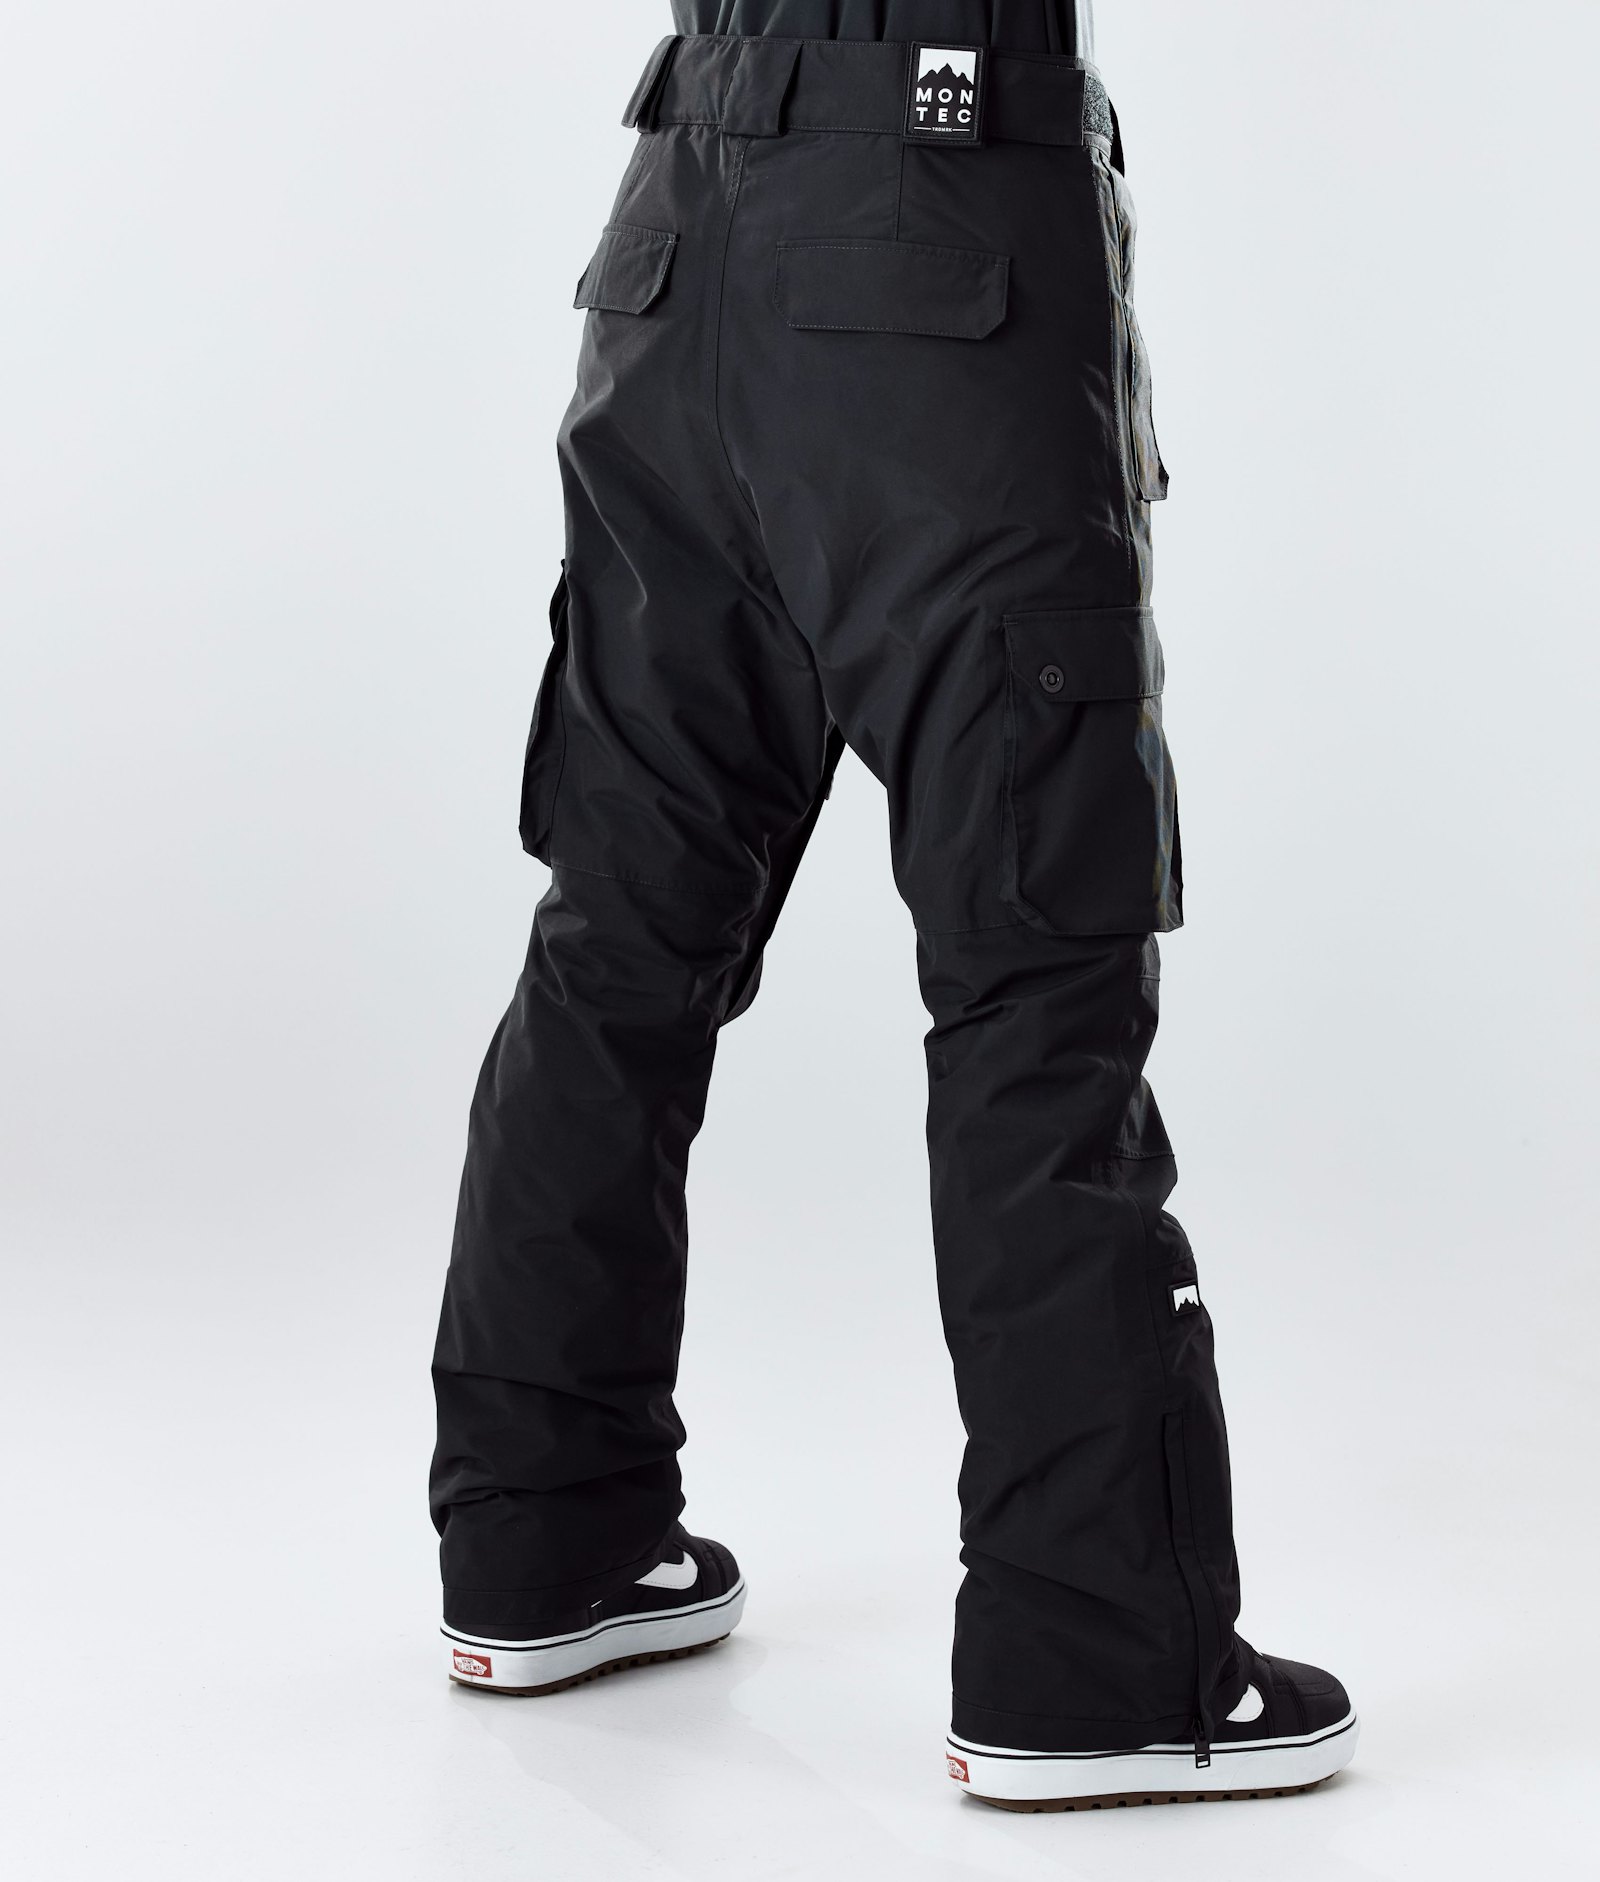 Montec Doom W 2020 Snowboard Pants Women Black, Image 3 of 6